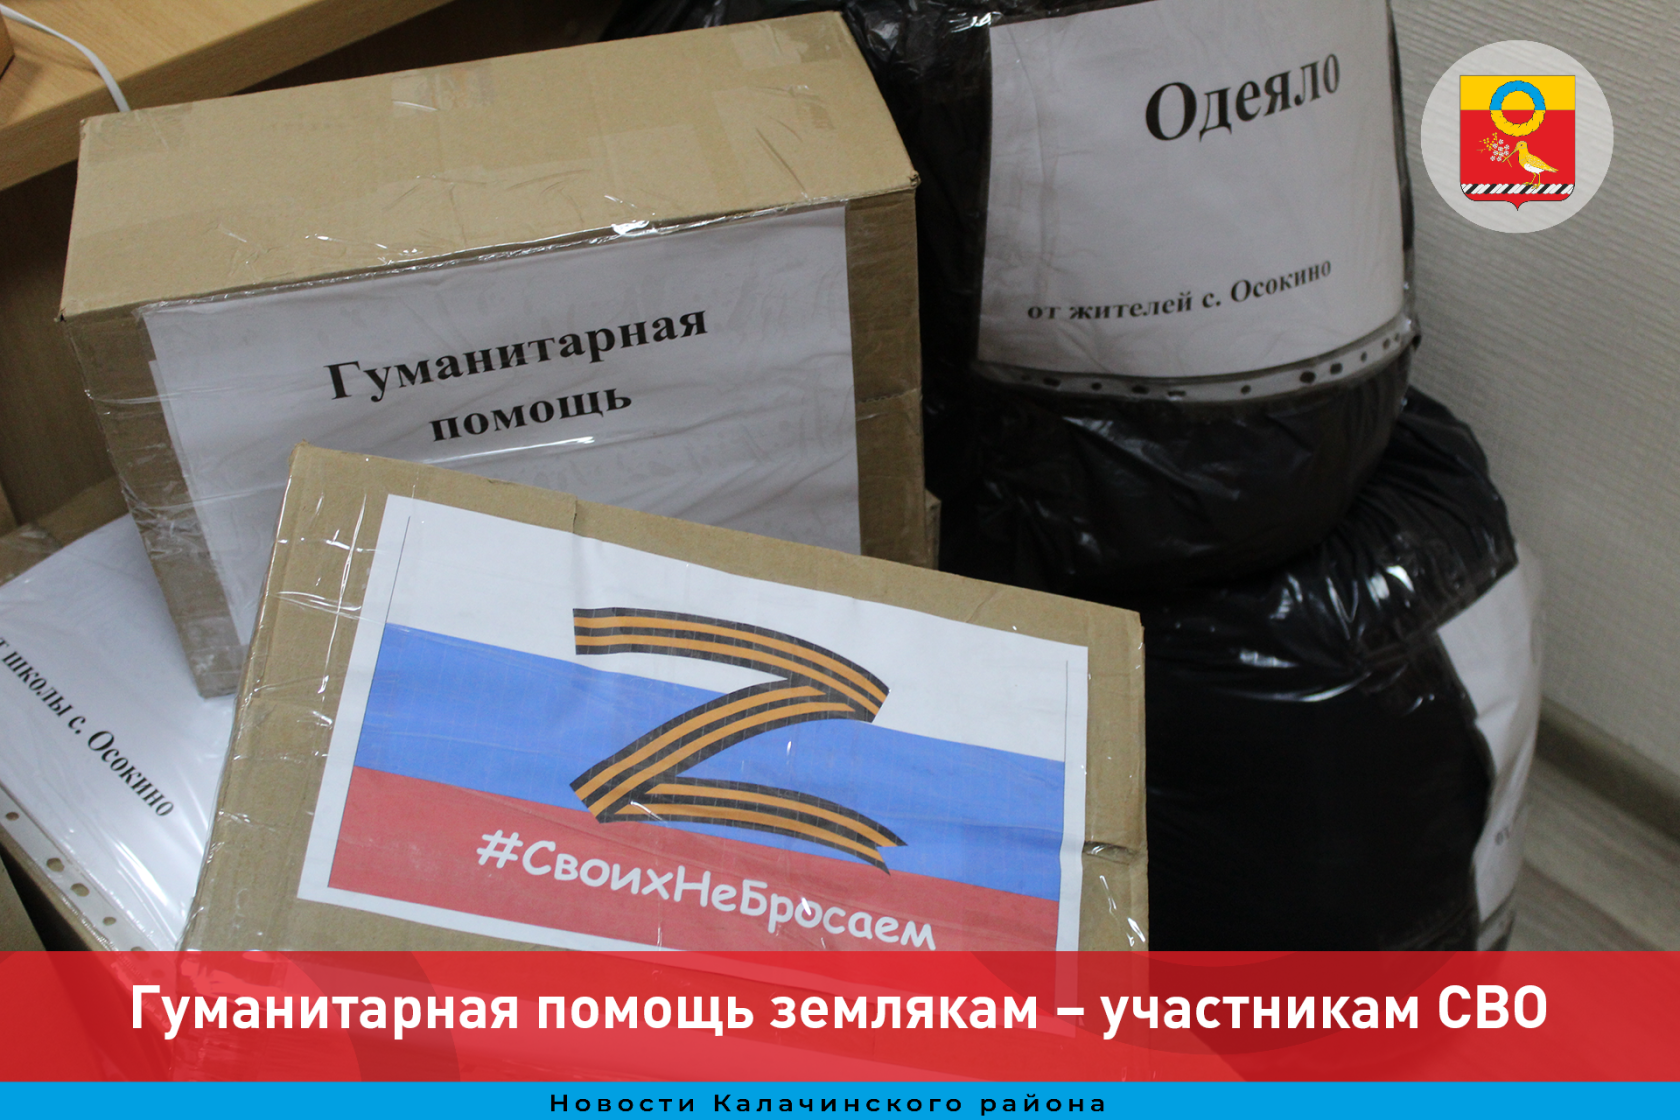 В Центре гуманитарной помощи Омской области готова к отправке очередная фура с гуманитарной помощью землякам – участникам СВО.